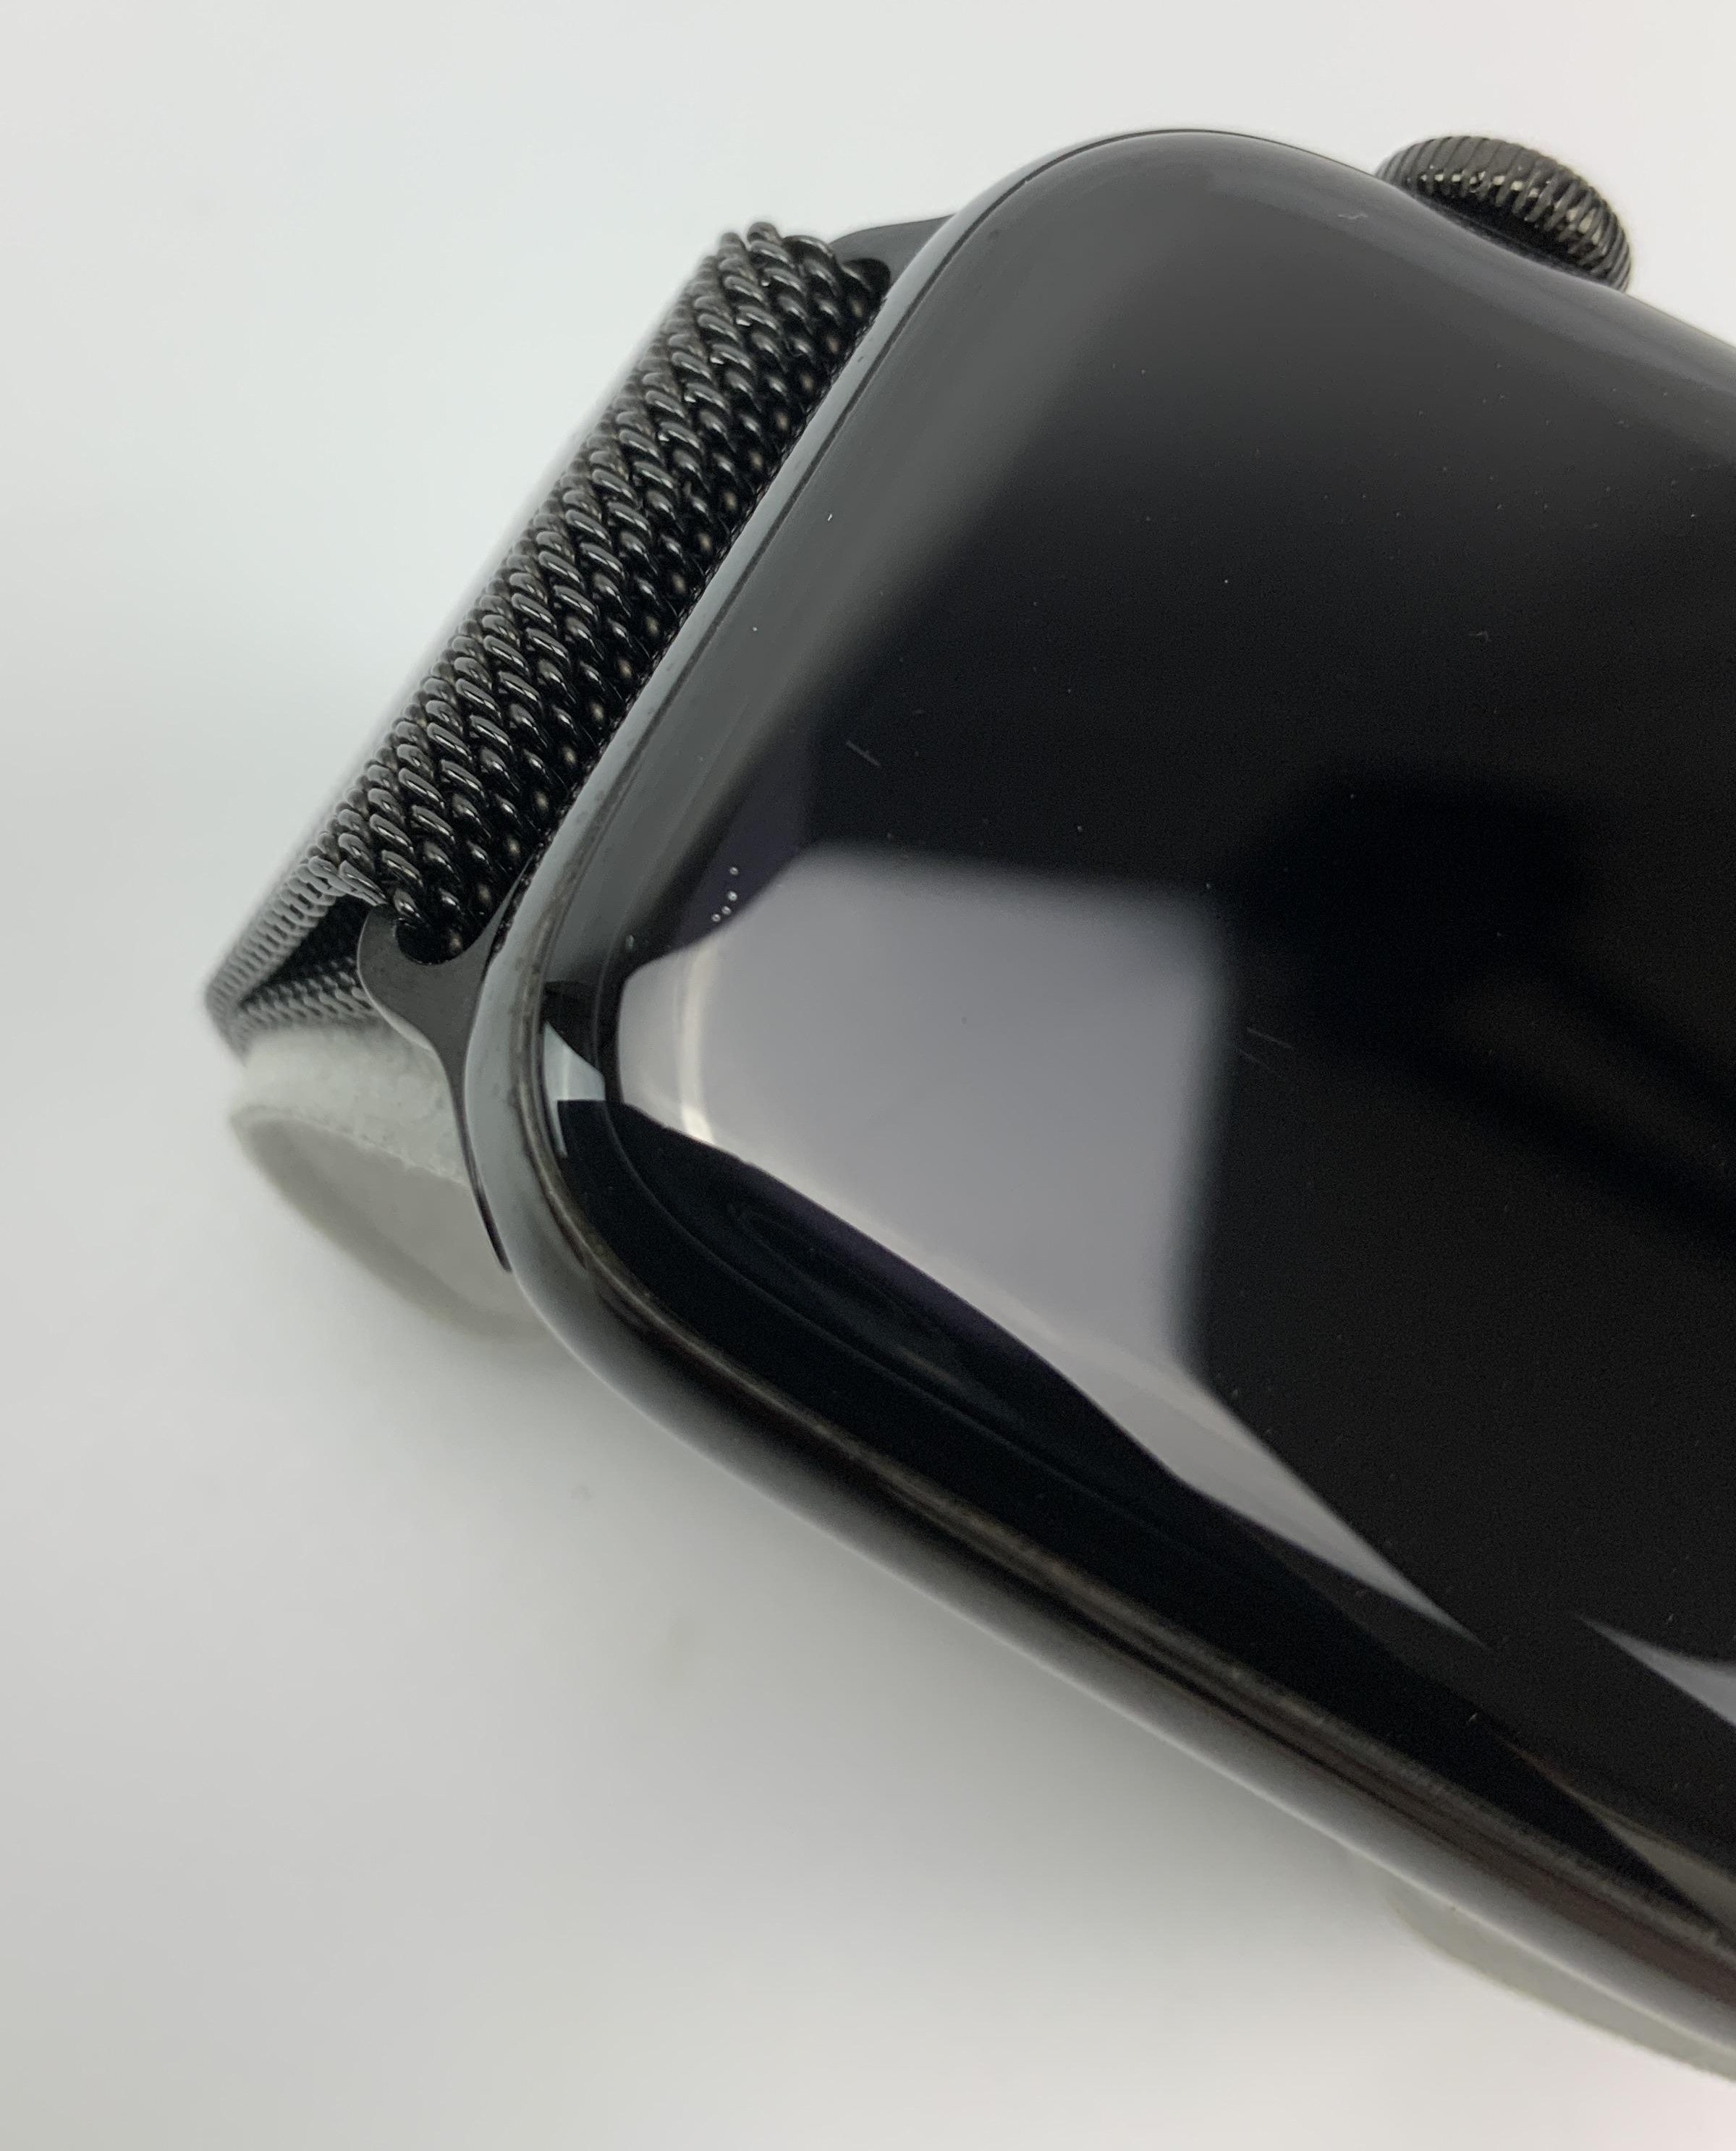 Watch Series 4 Steel Cellular (44mm), Space Black, Space Black Milanese Loop, imagen 4